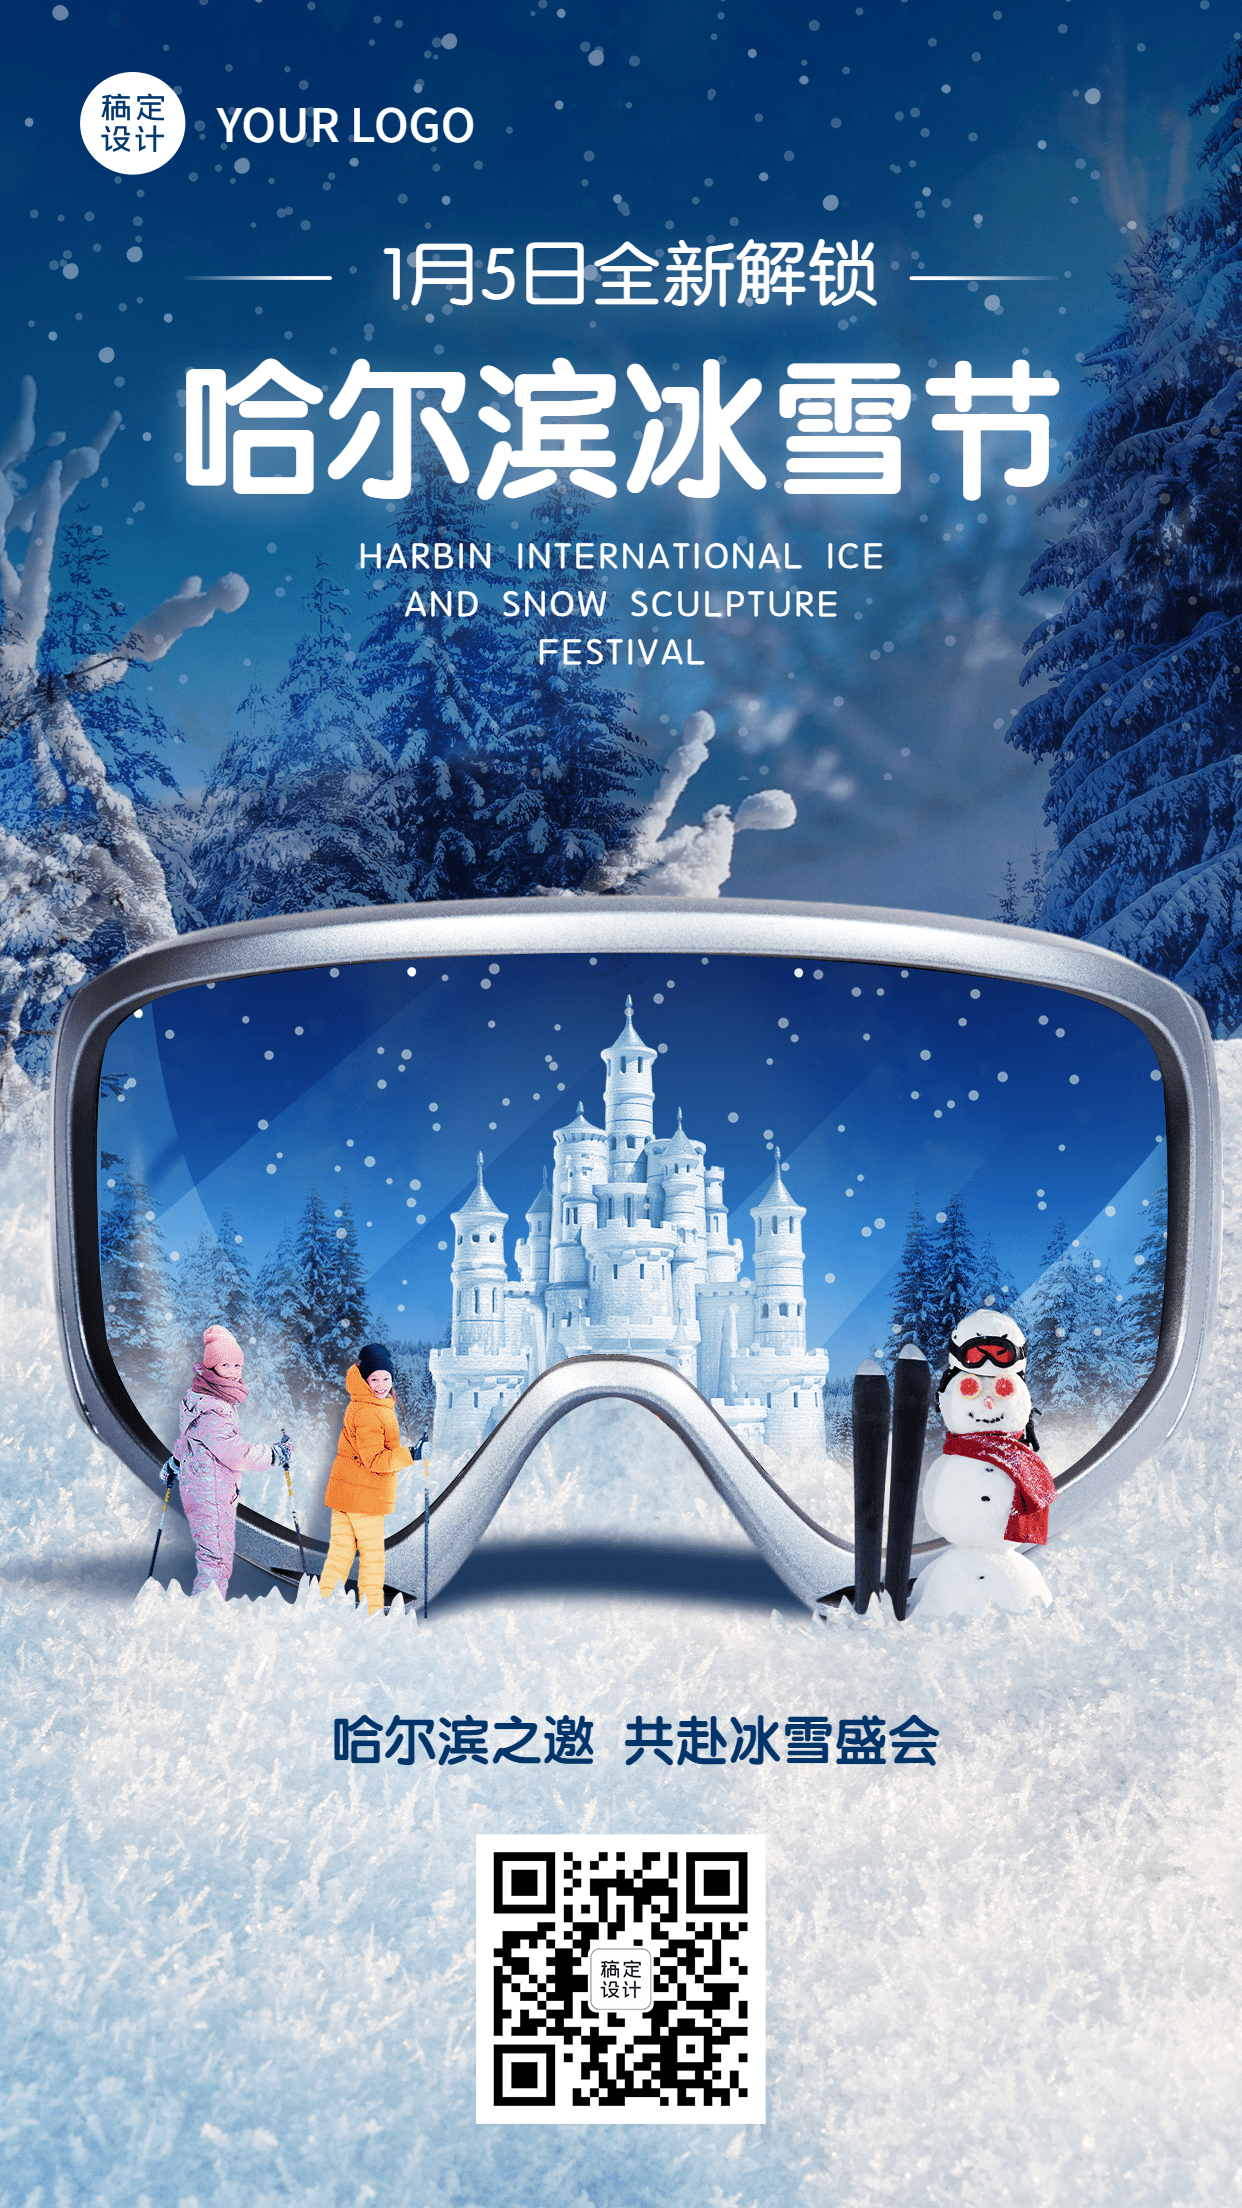 冬季旅游哈尔滨国际冰雪节活动宣传实景海报